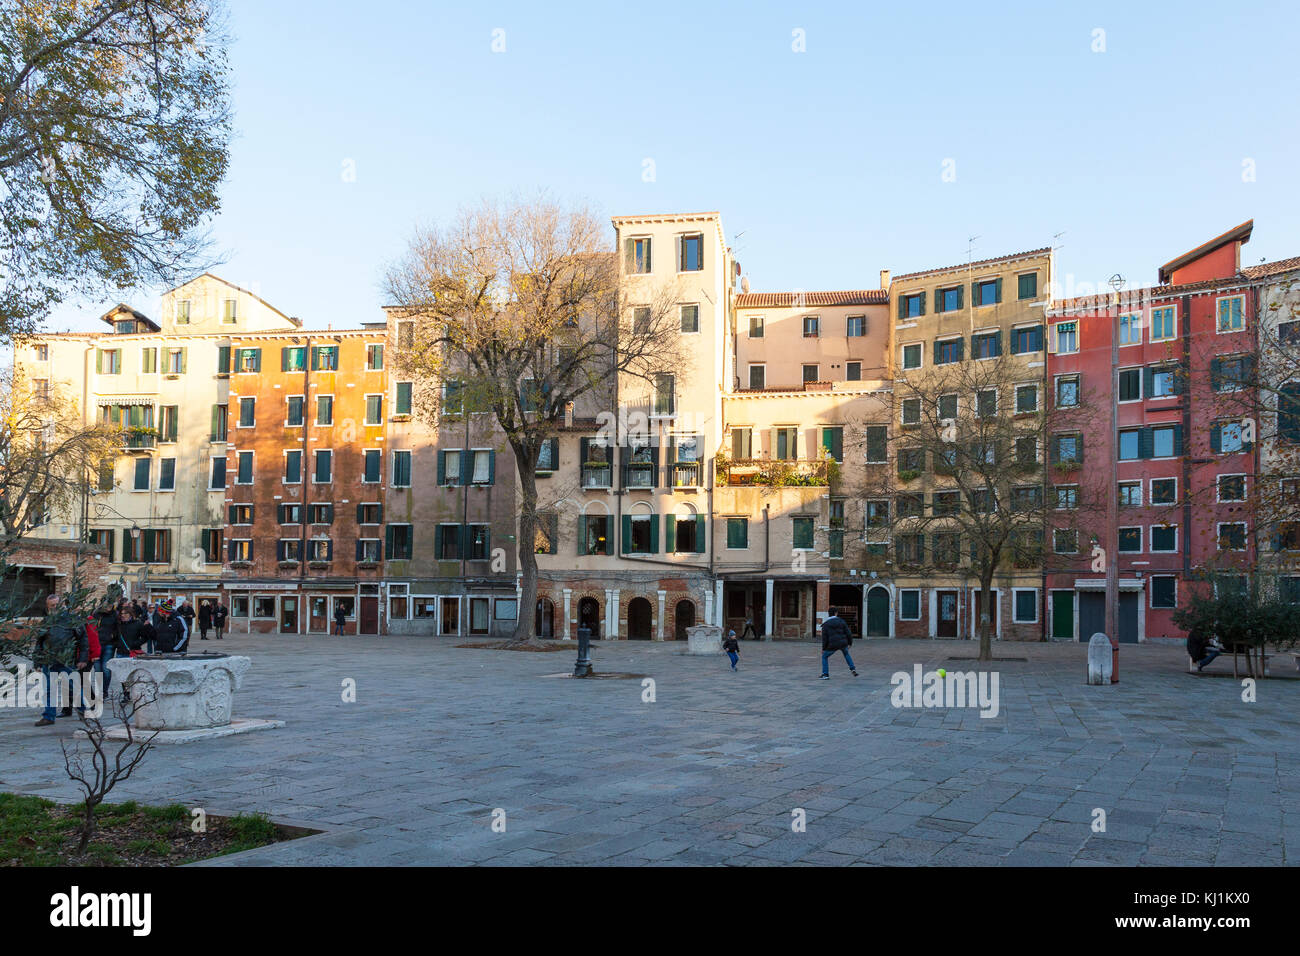 Das jüdische Ghetto, Campo de Ghetto Novo, in der Dämmerung, Venedig, Venetien, Italien withits typischen hohen Gebäuden wegen Mangel an Land zu den Juden zugeordnet Stockfoto